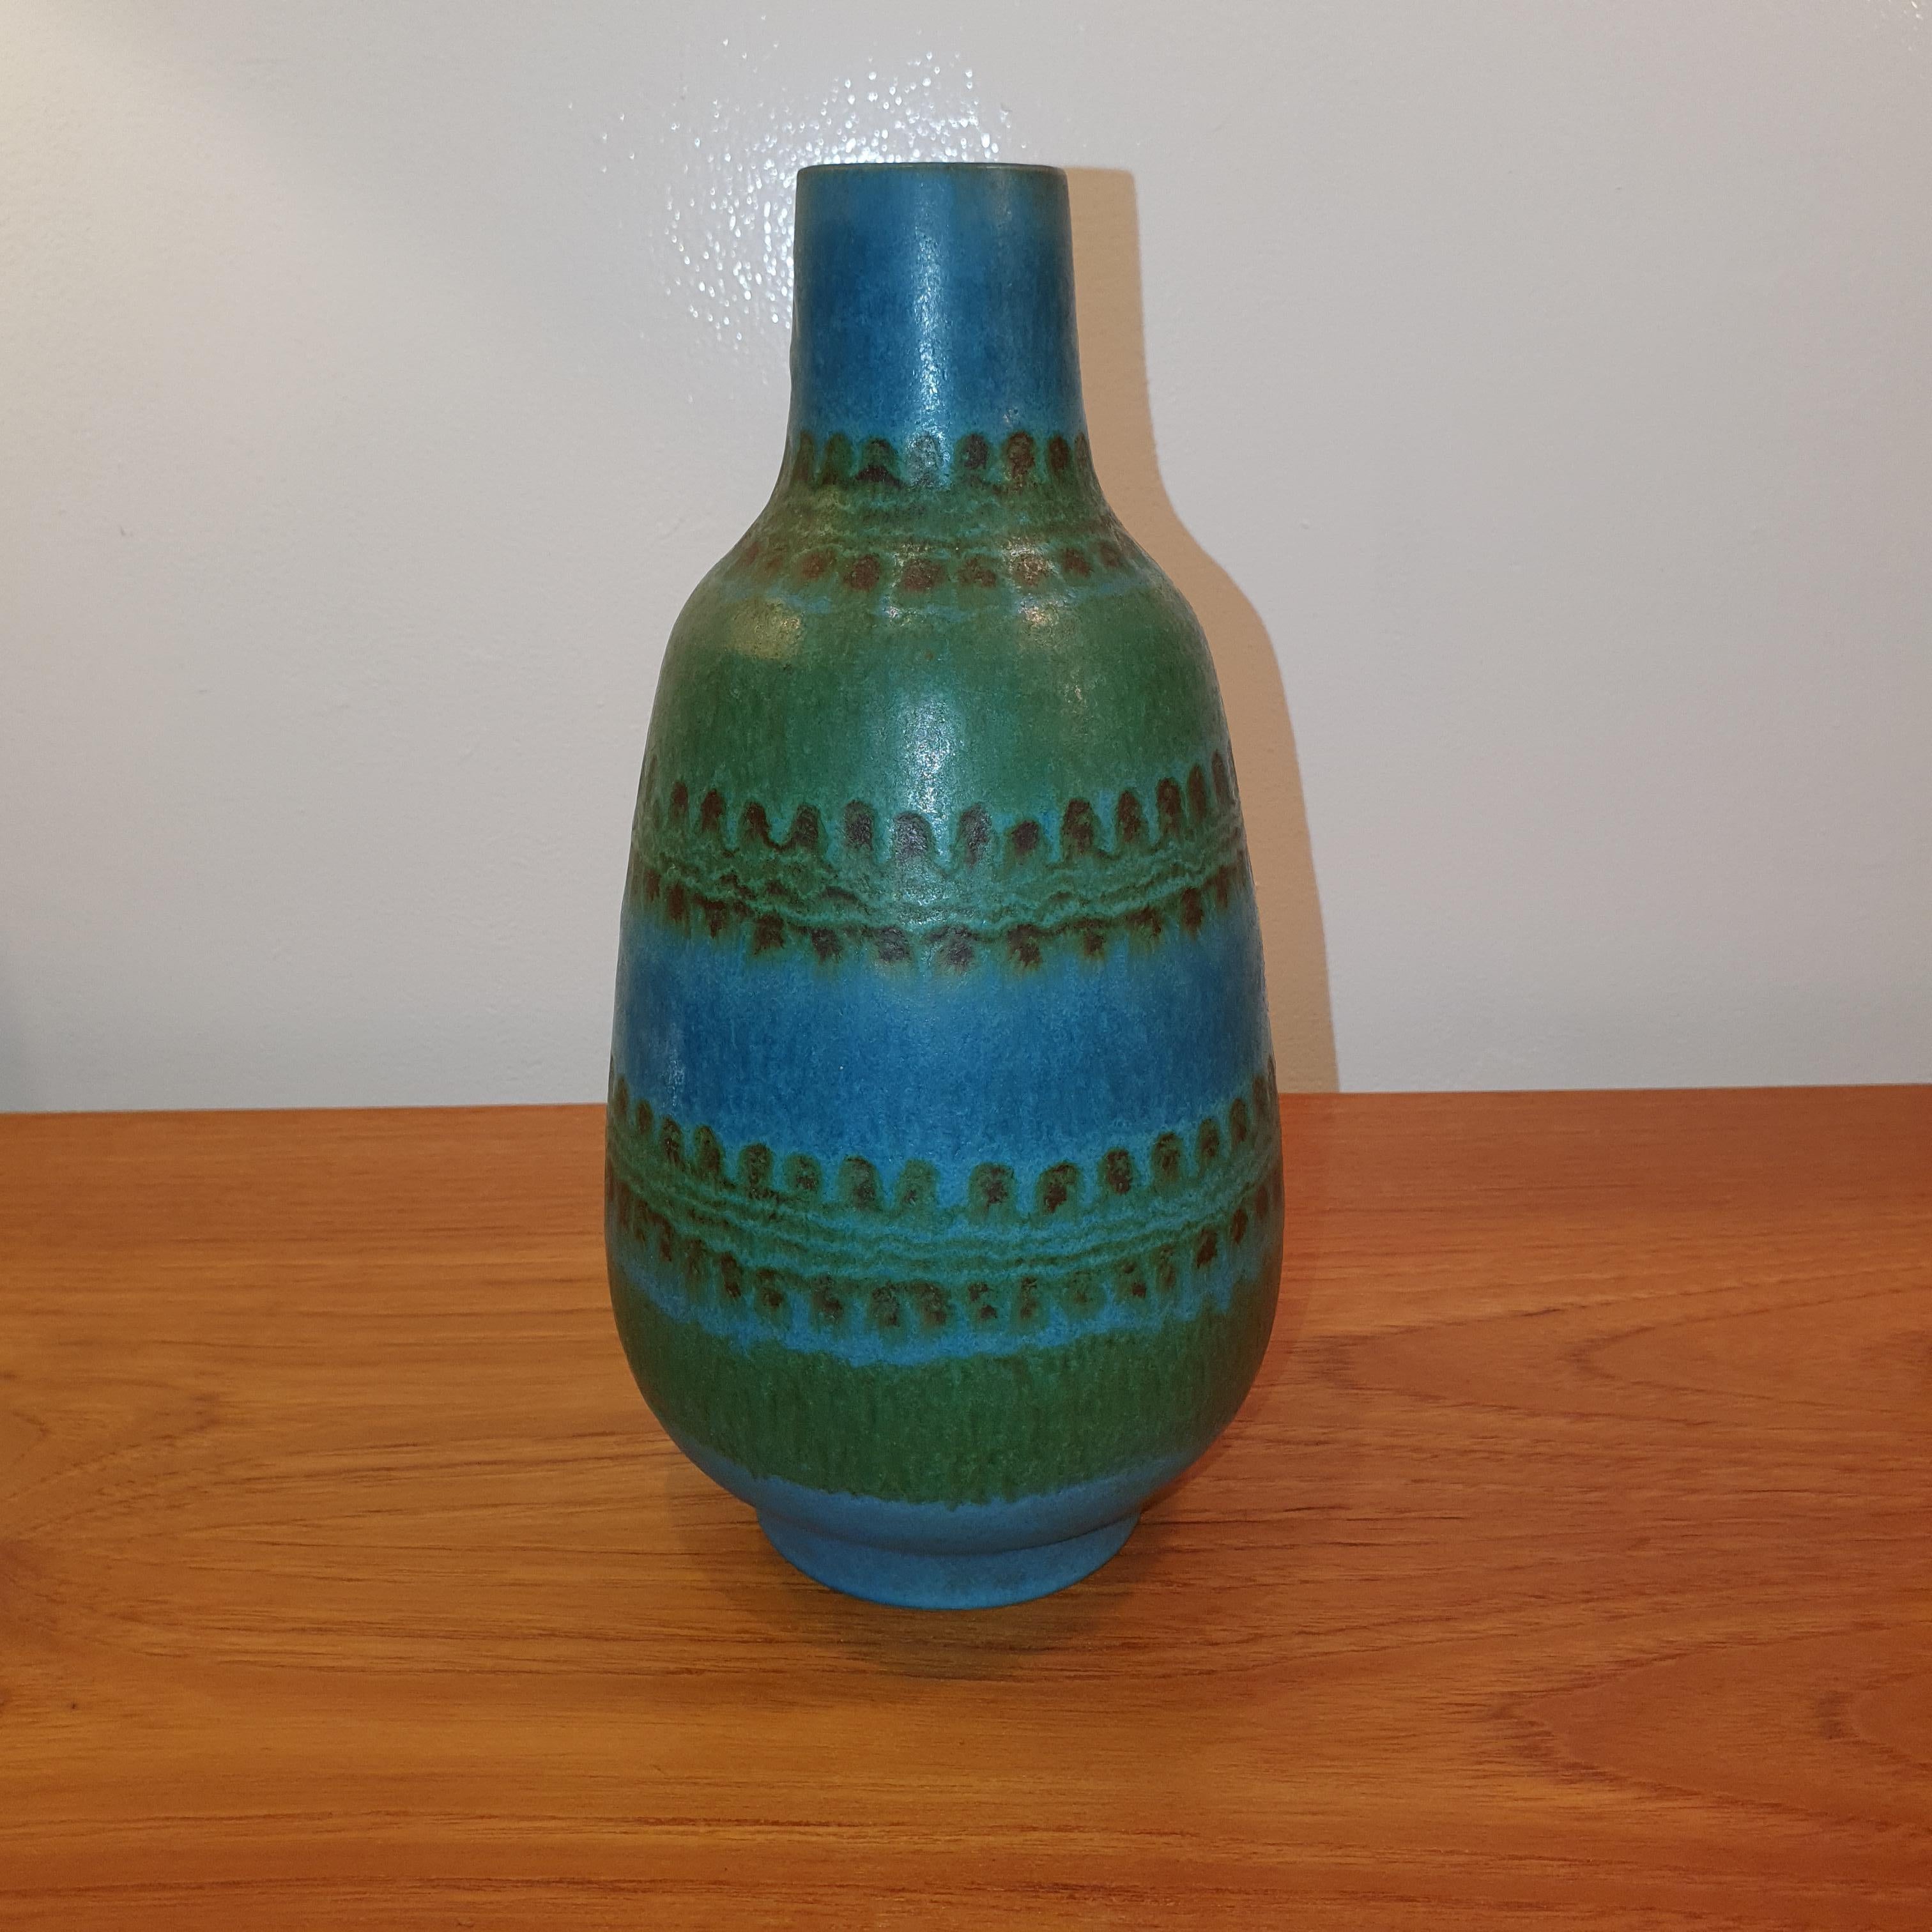 Magnifique vase vert de mer de forme unique par Alvino Bagni pour Rosenthal netter. marqué Italie sur le dessous.